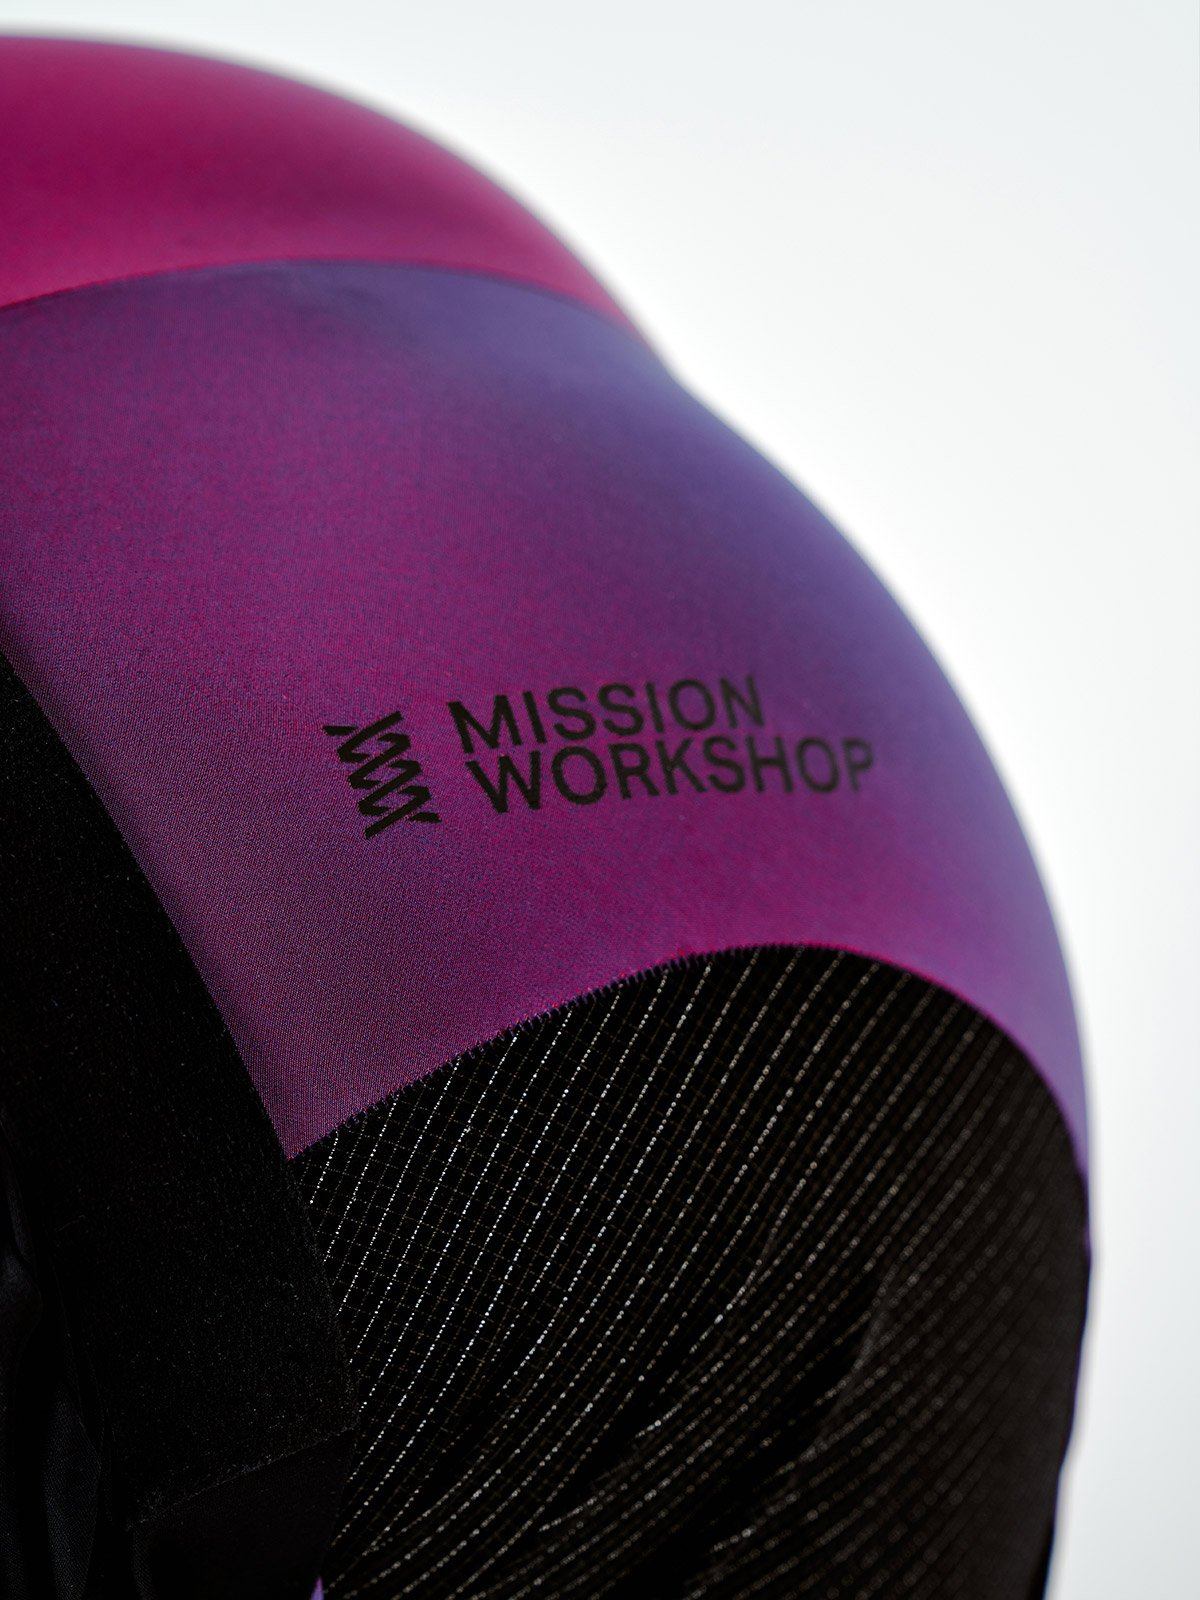 Mission Pro Bib Men's by Mission Workshop - Säänkestävät laukut ja tekniset vaatteet - San Francisco & Los Angeles - Kestää - ikuisesti taattu